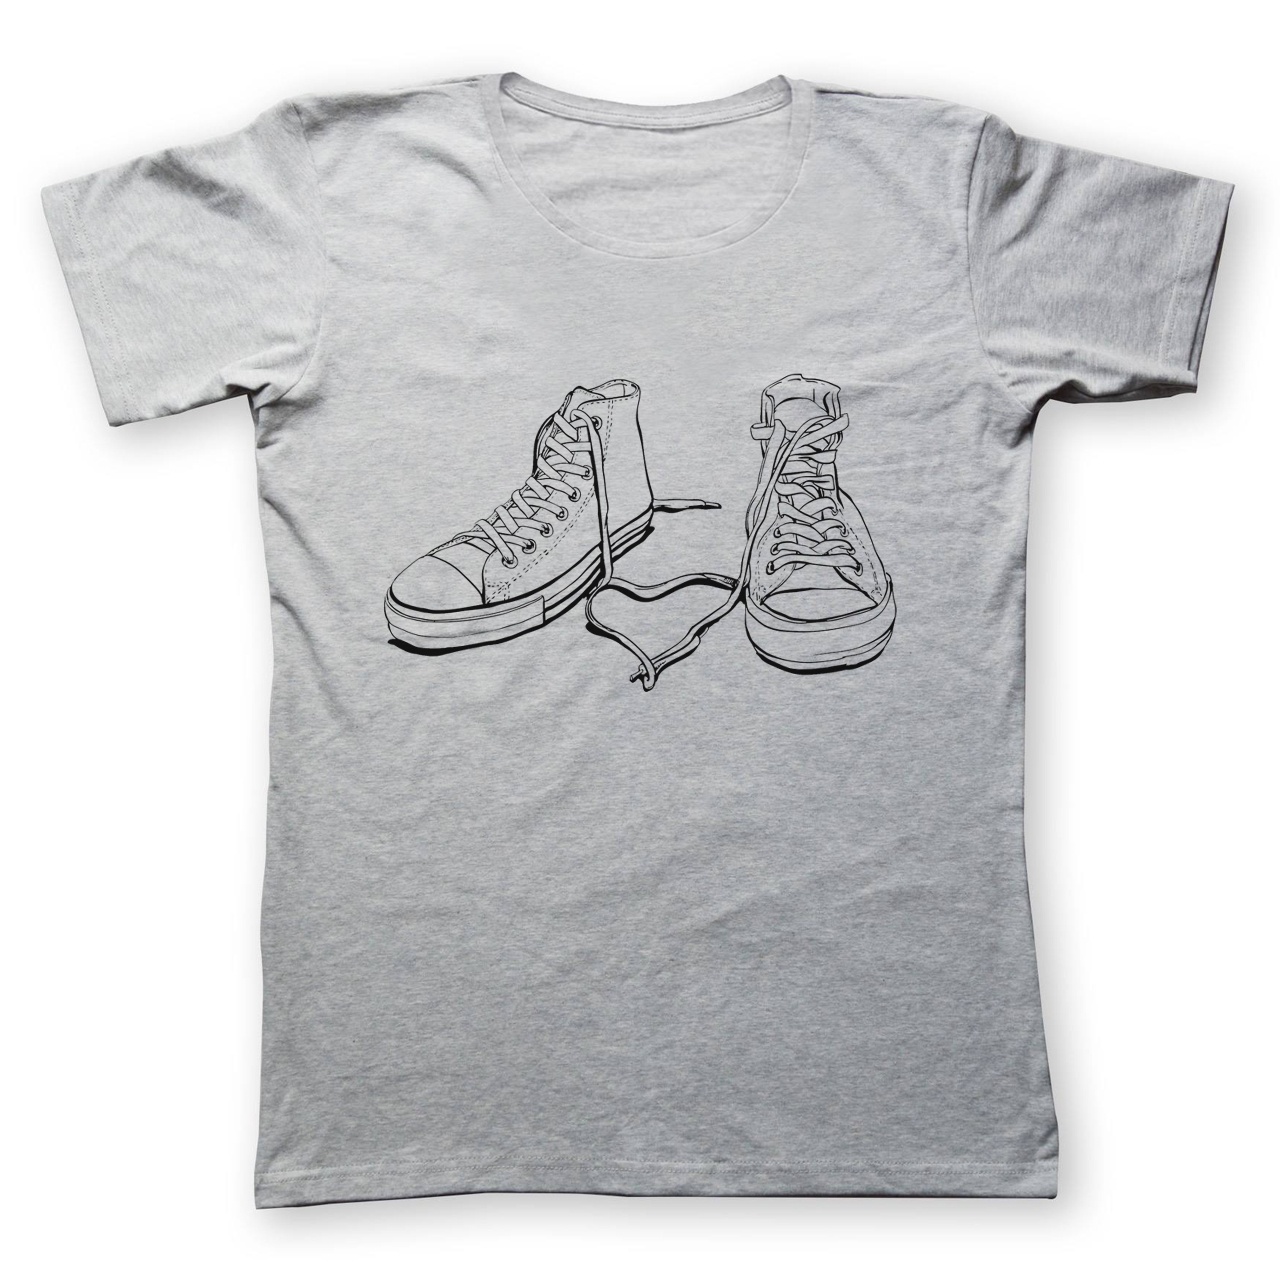 تی شرت زنانه به رسم طرح آل استار کد 4422